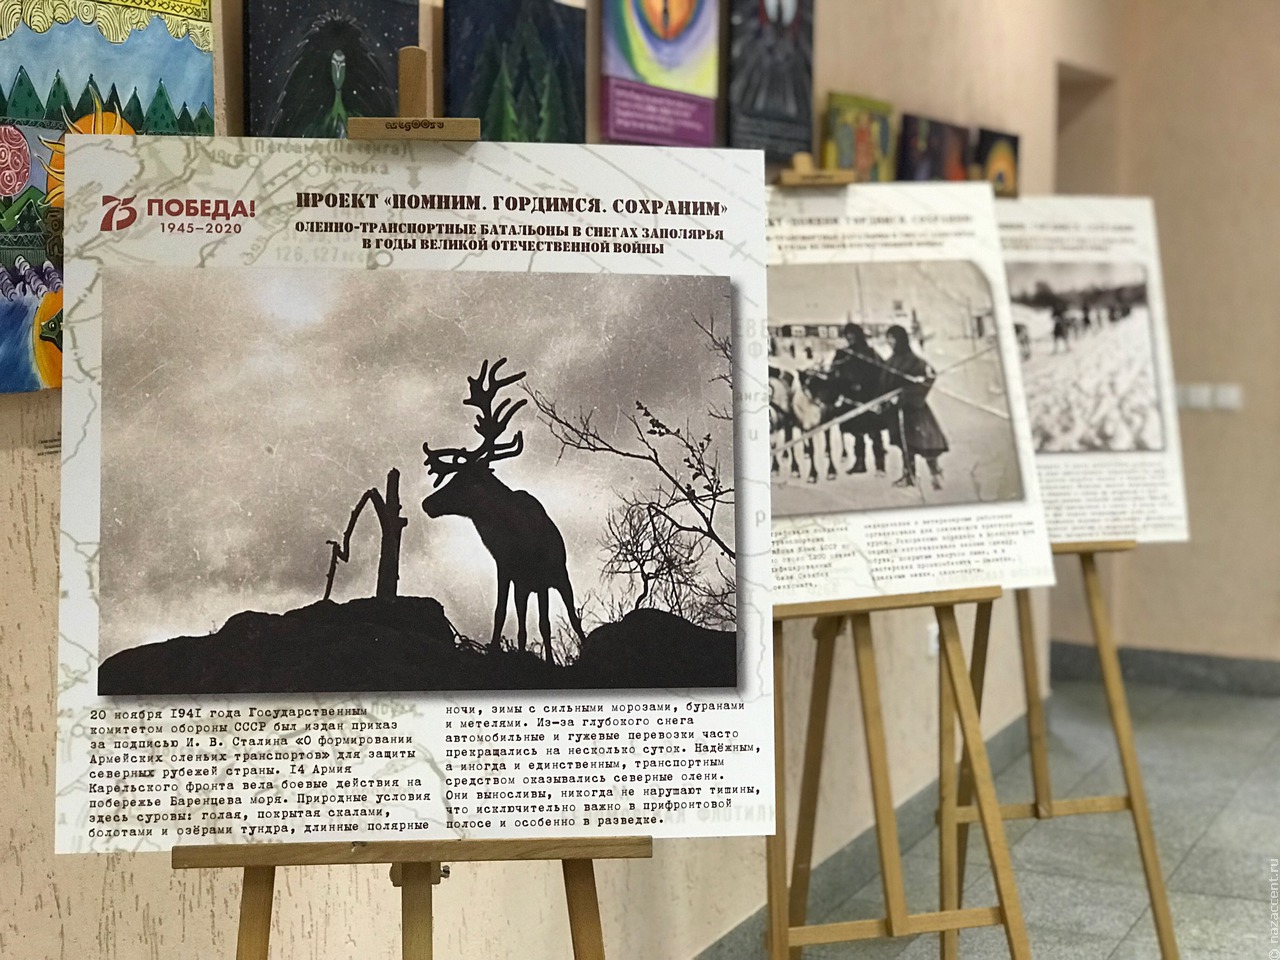 Финно-угорский культурный центр подготовил экспозицию о подвиге оленеводов в годы войны